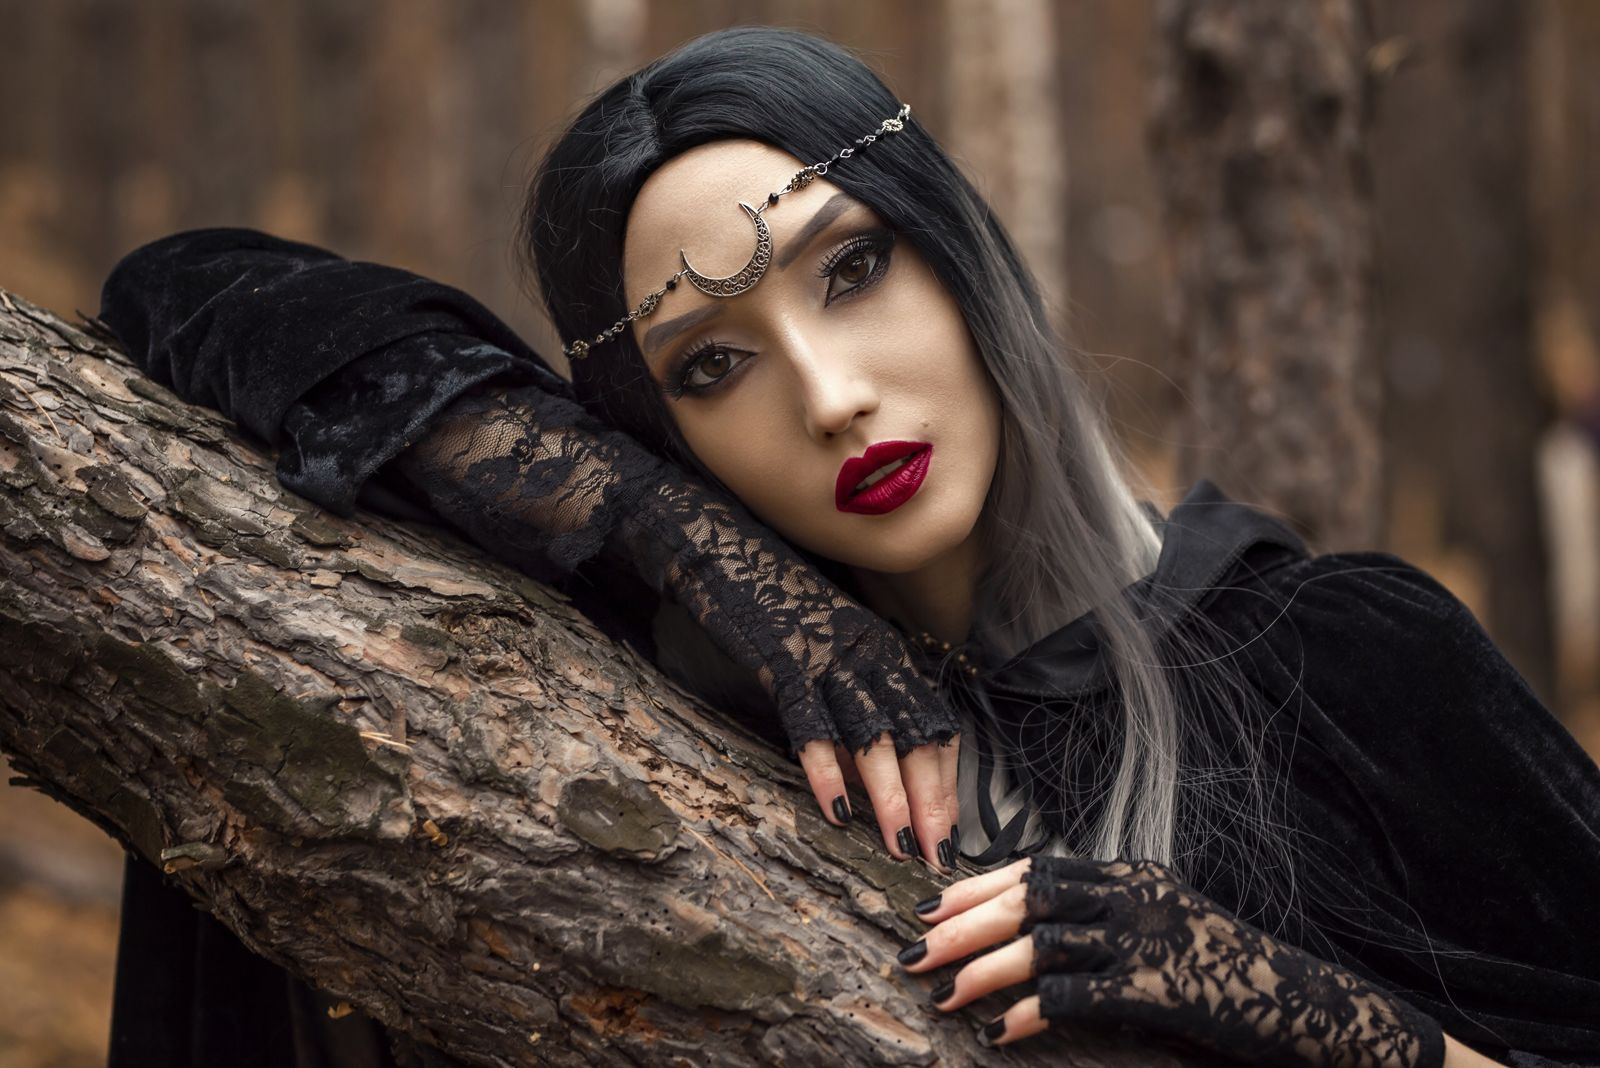 Организатор проекта Ирина Воинкова и сама переоделась в ведьму